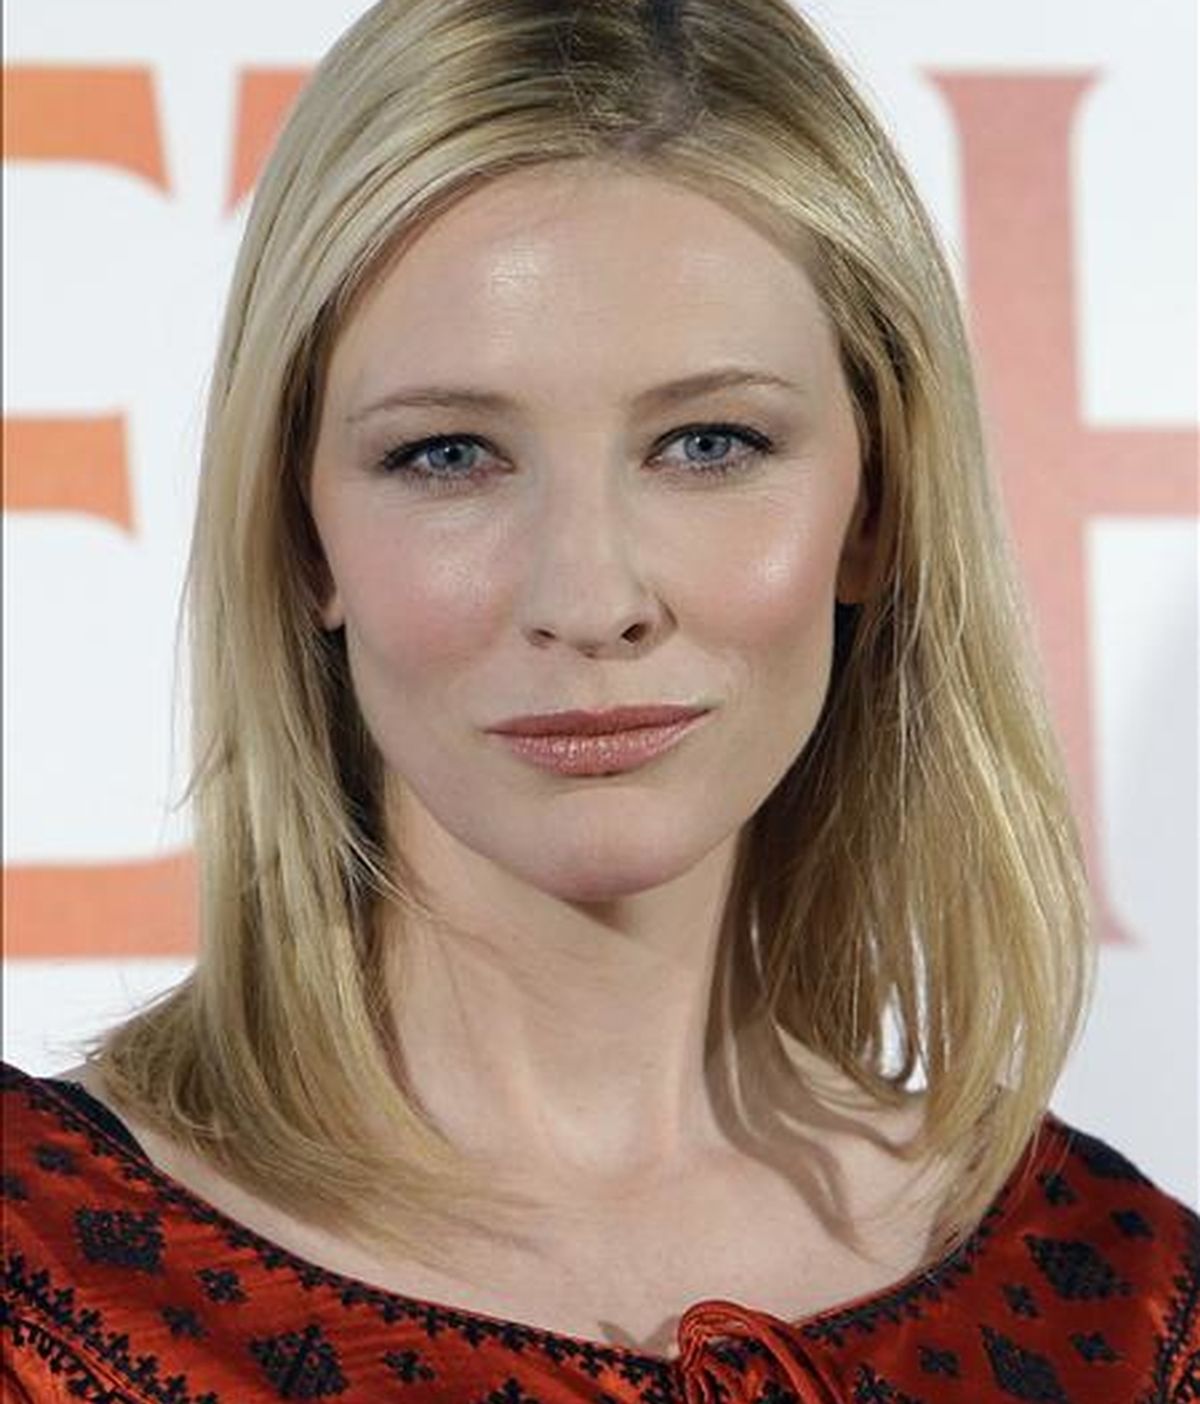 La actriz Cate Blanchett volverá a interpretar el personaje de Galadriel, princesa de los elfos. EFE/Archivo